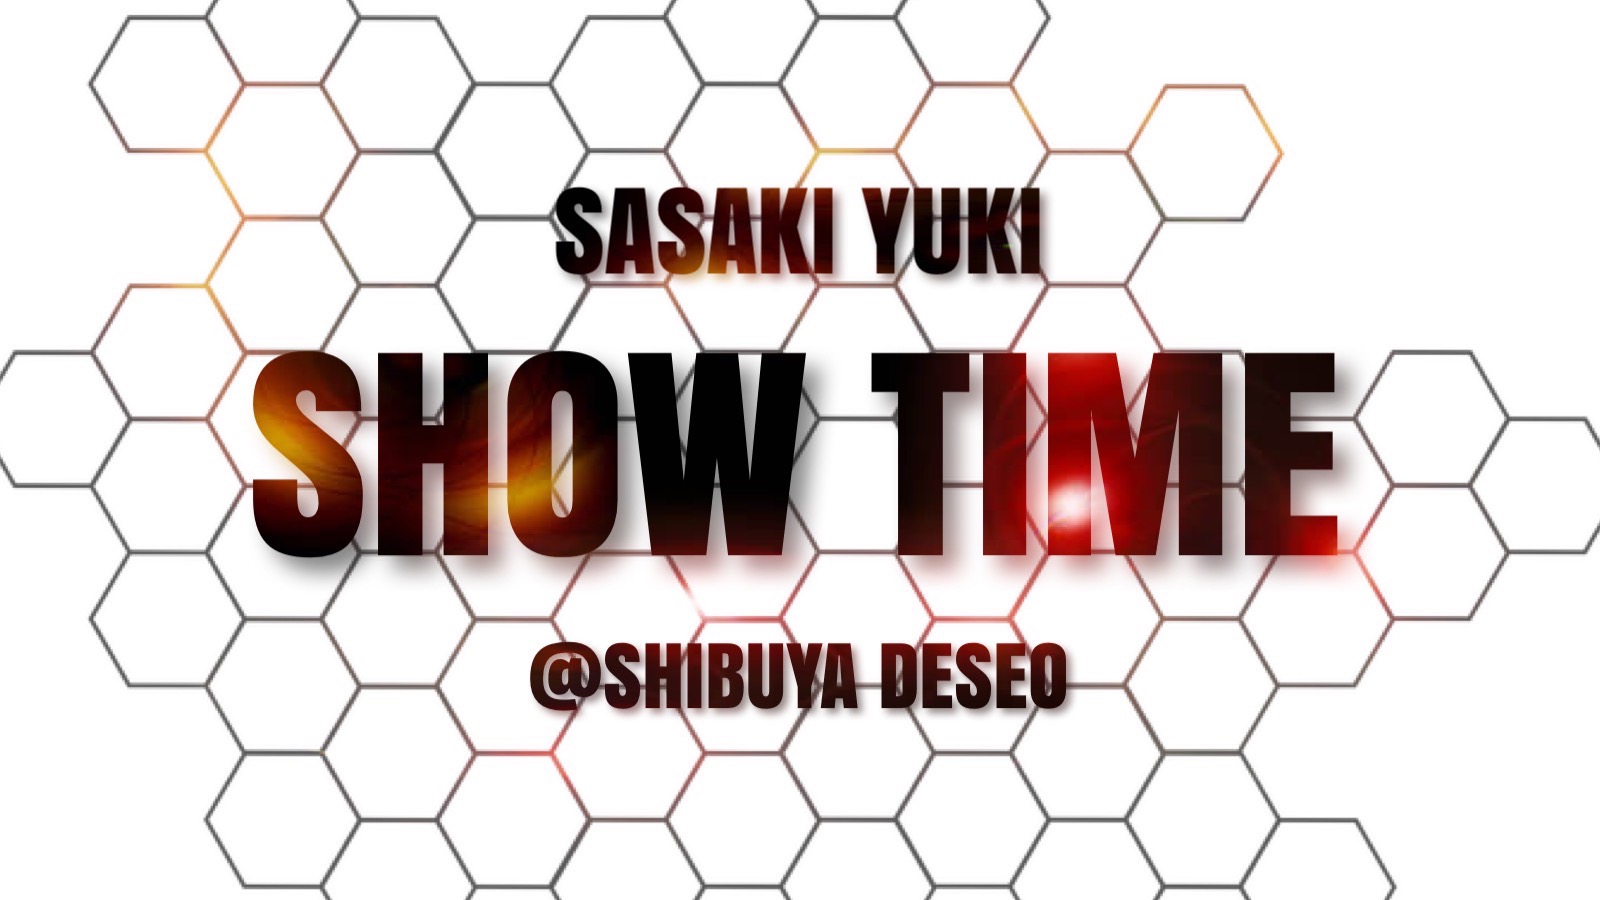 SASAKI YUKI -Show time- @SENDAI